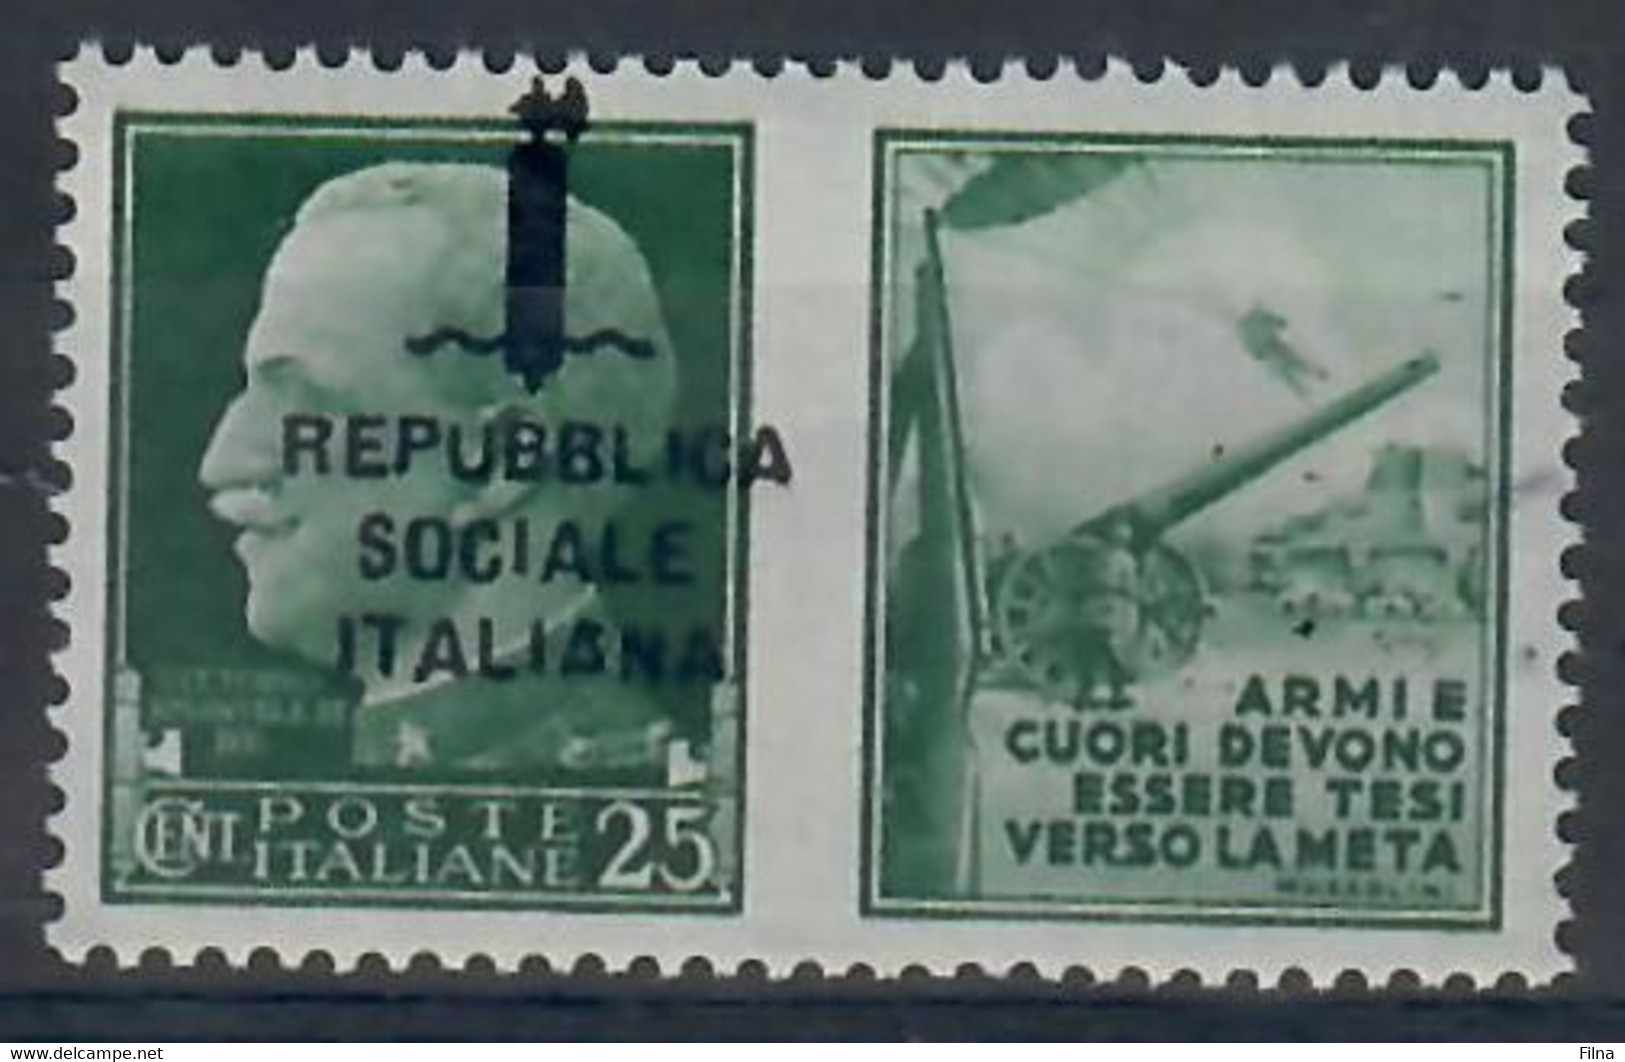 ITALIA - REPUBBLICA SOCIALE ITALIANA 1944 - PROPAGANDA DI GUERRA - 25 C. - VARIETA' SOPRASTAMPA SPOSTATA  - MNH/** - Propaganda Di Guerra